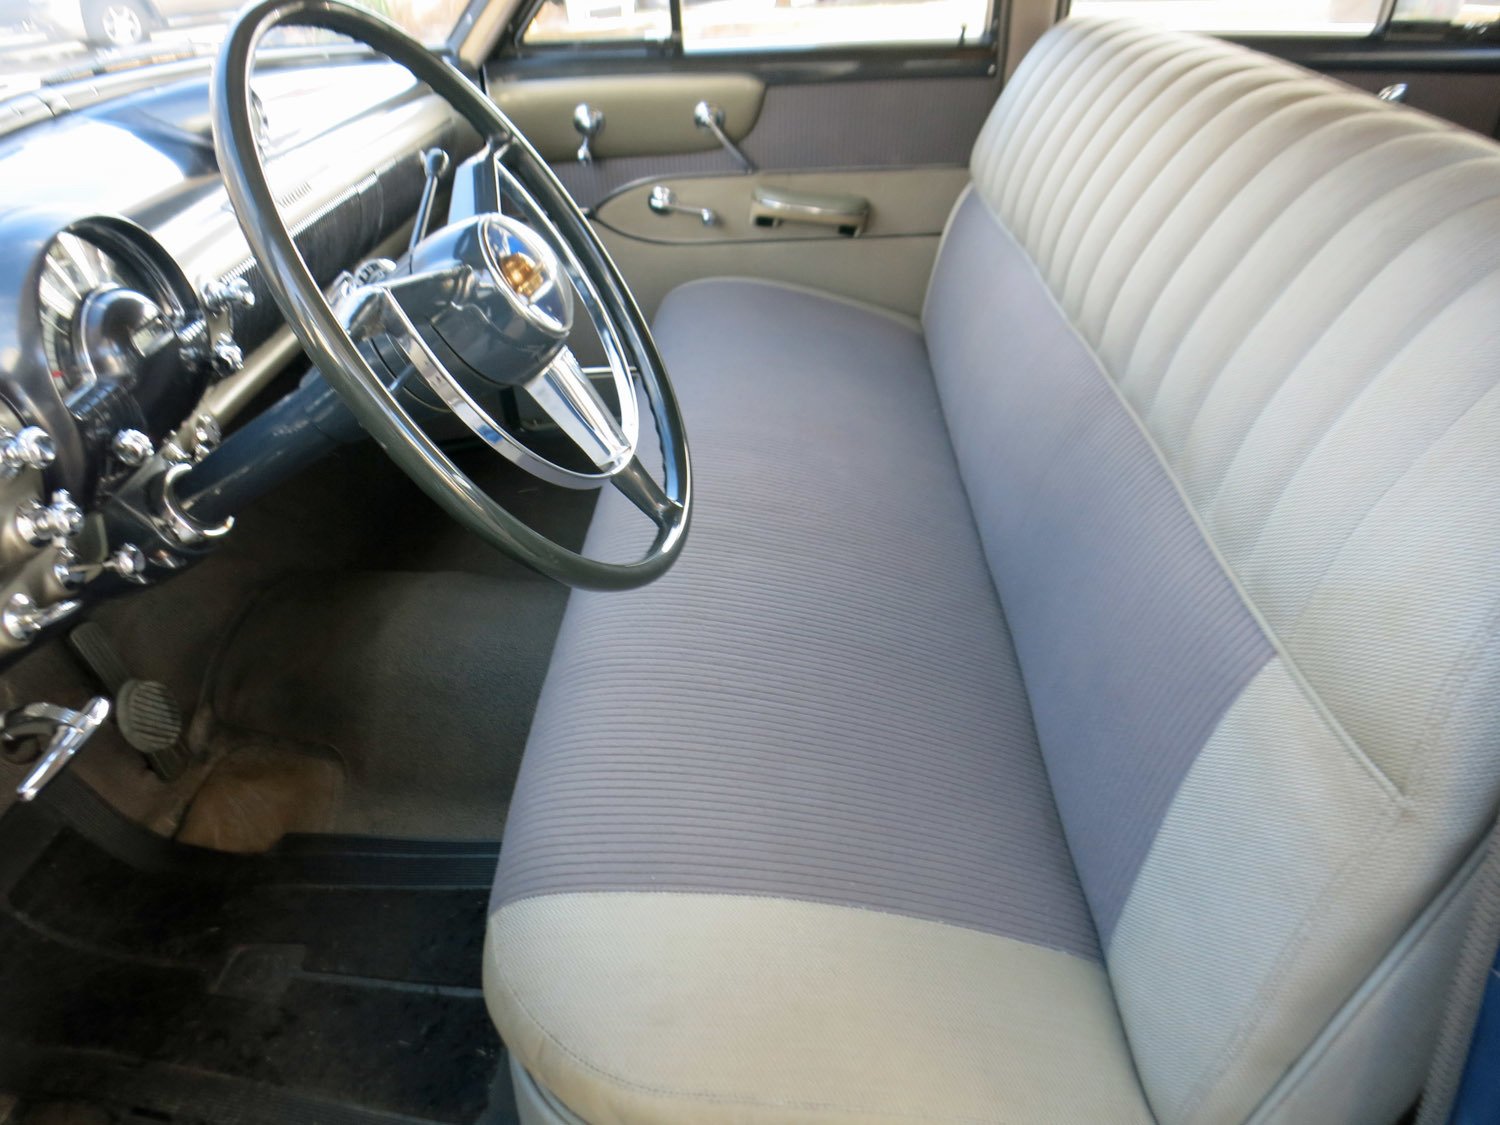 1950 Oldsmobile 98